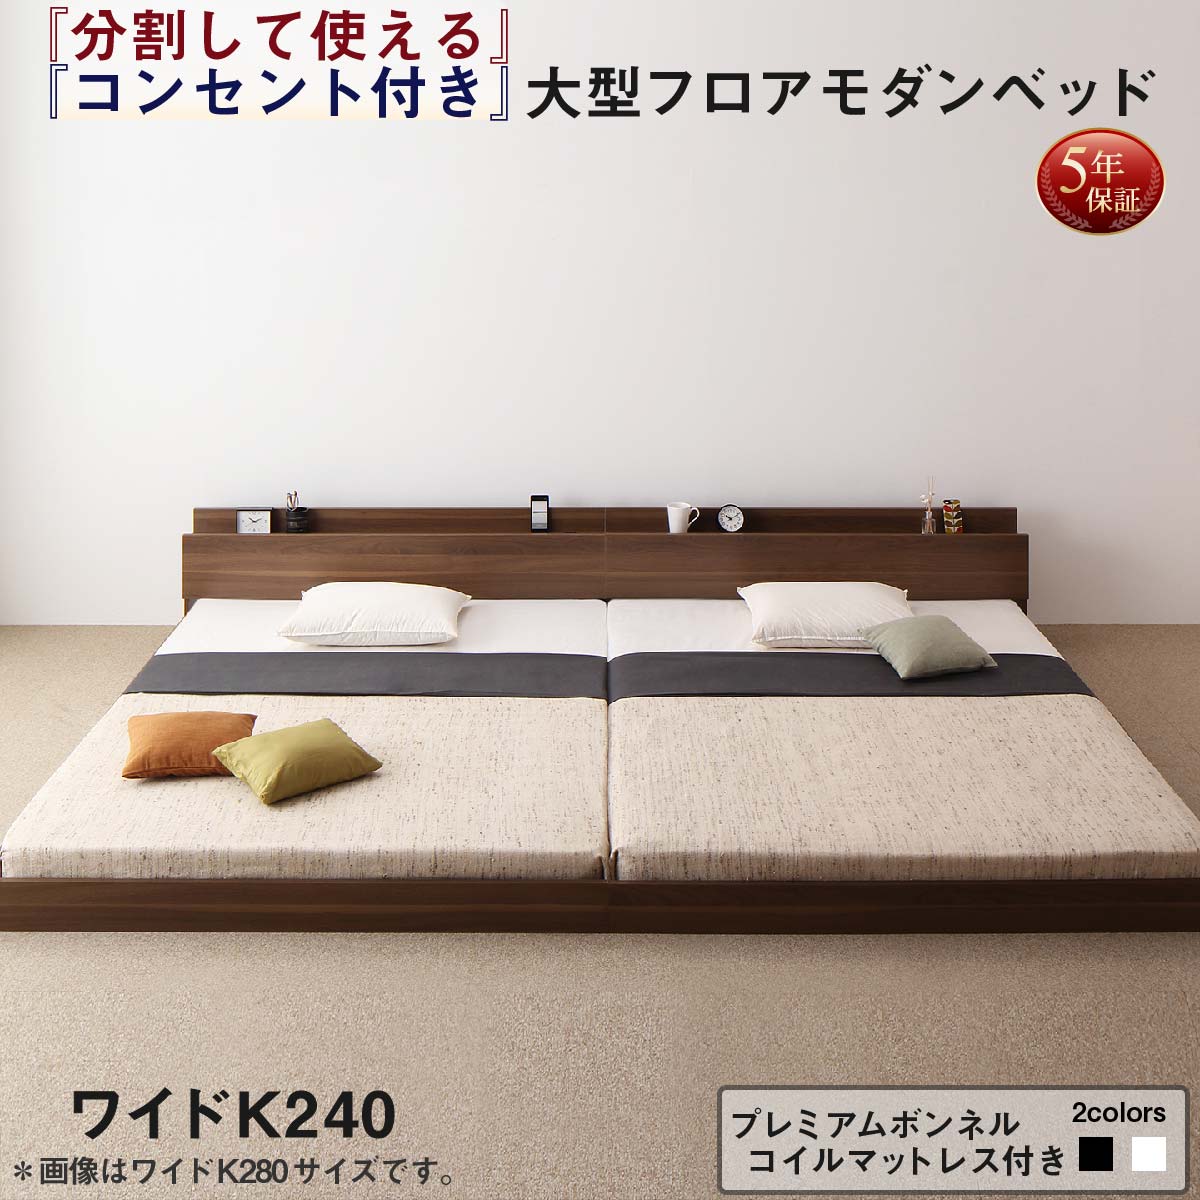 日本全国送料無料 ファミリーベッド 連結ベッド 親子ベッド 大型ベッド